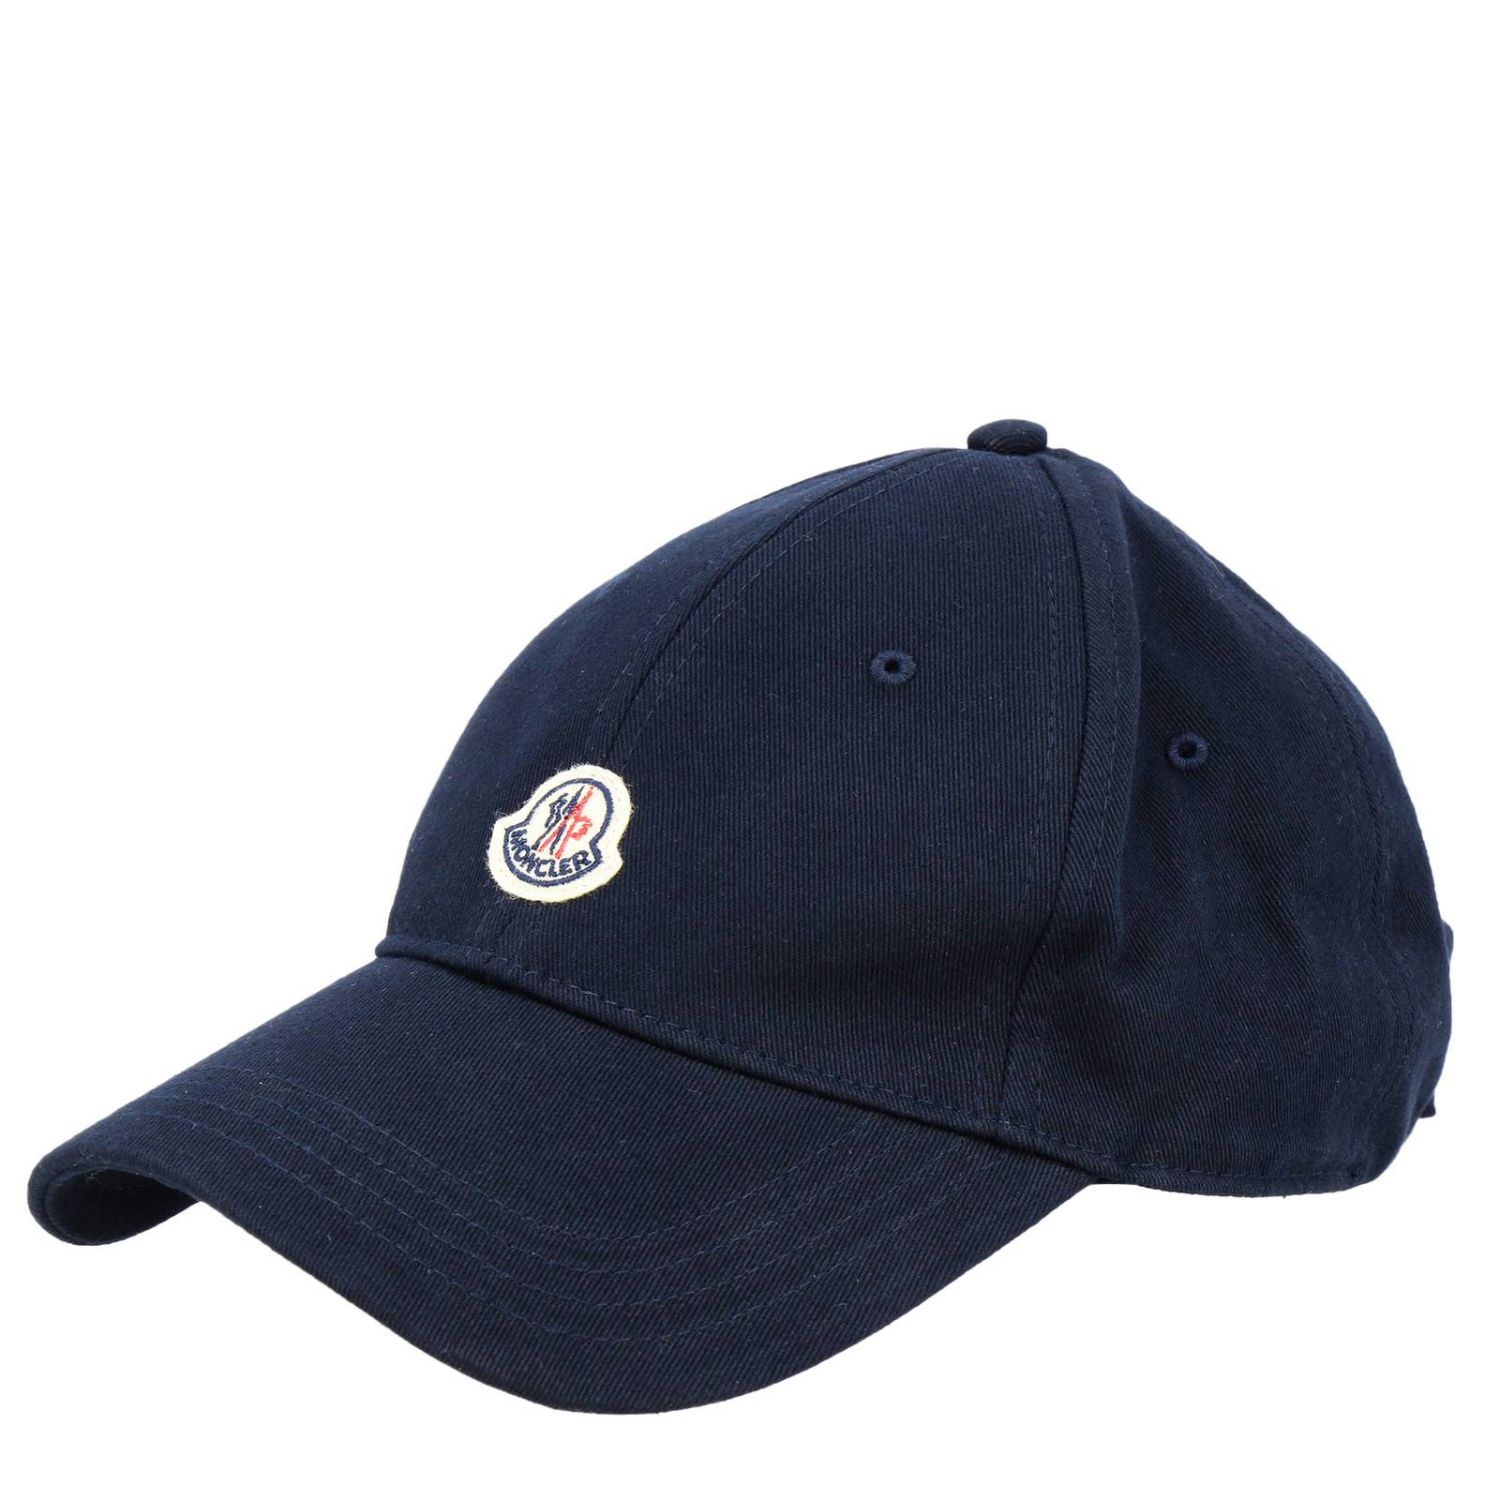 Moncler Outlet: hat for kids - Blue 1 | Moncler hat 00121 04863 online ...